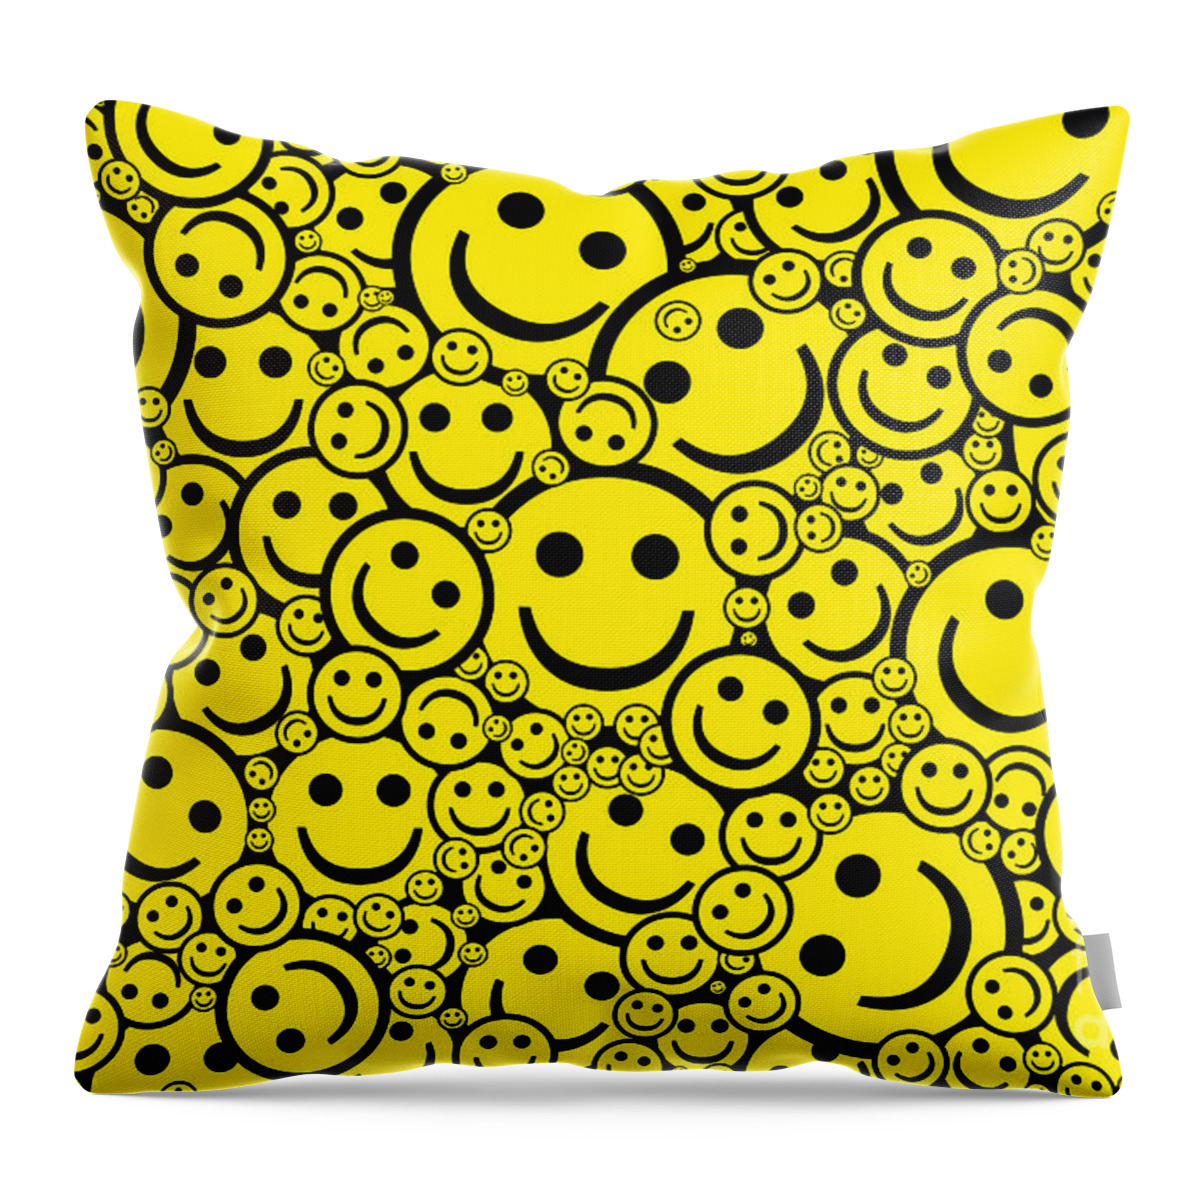 smiley pillows